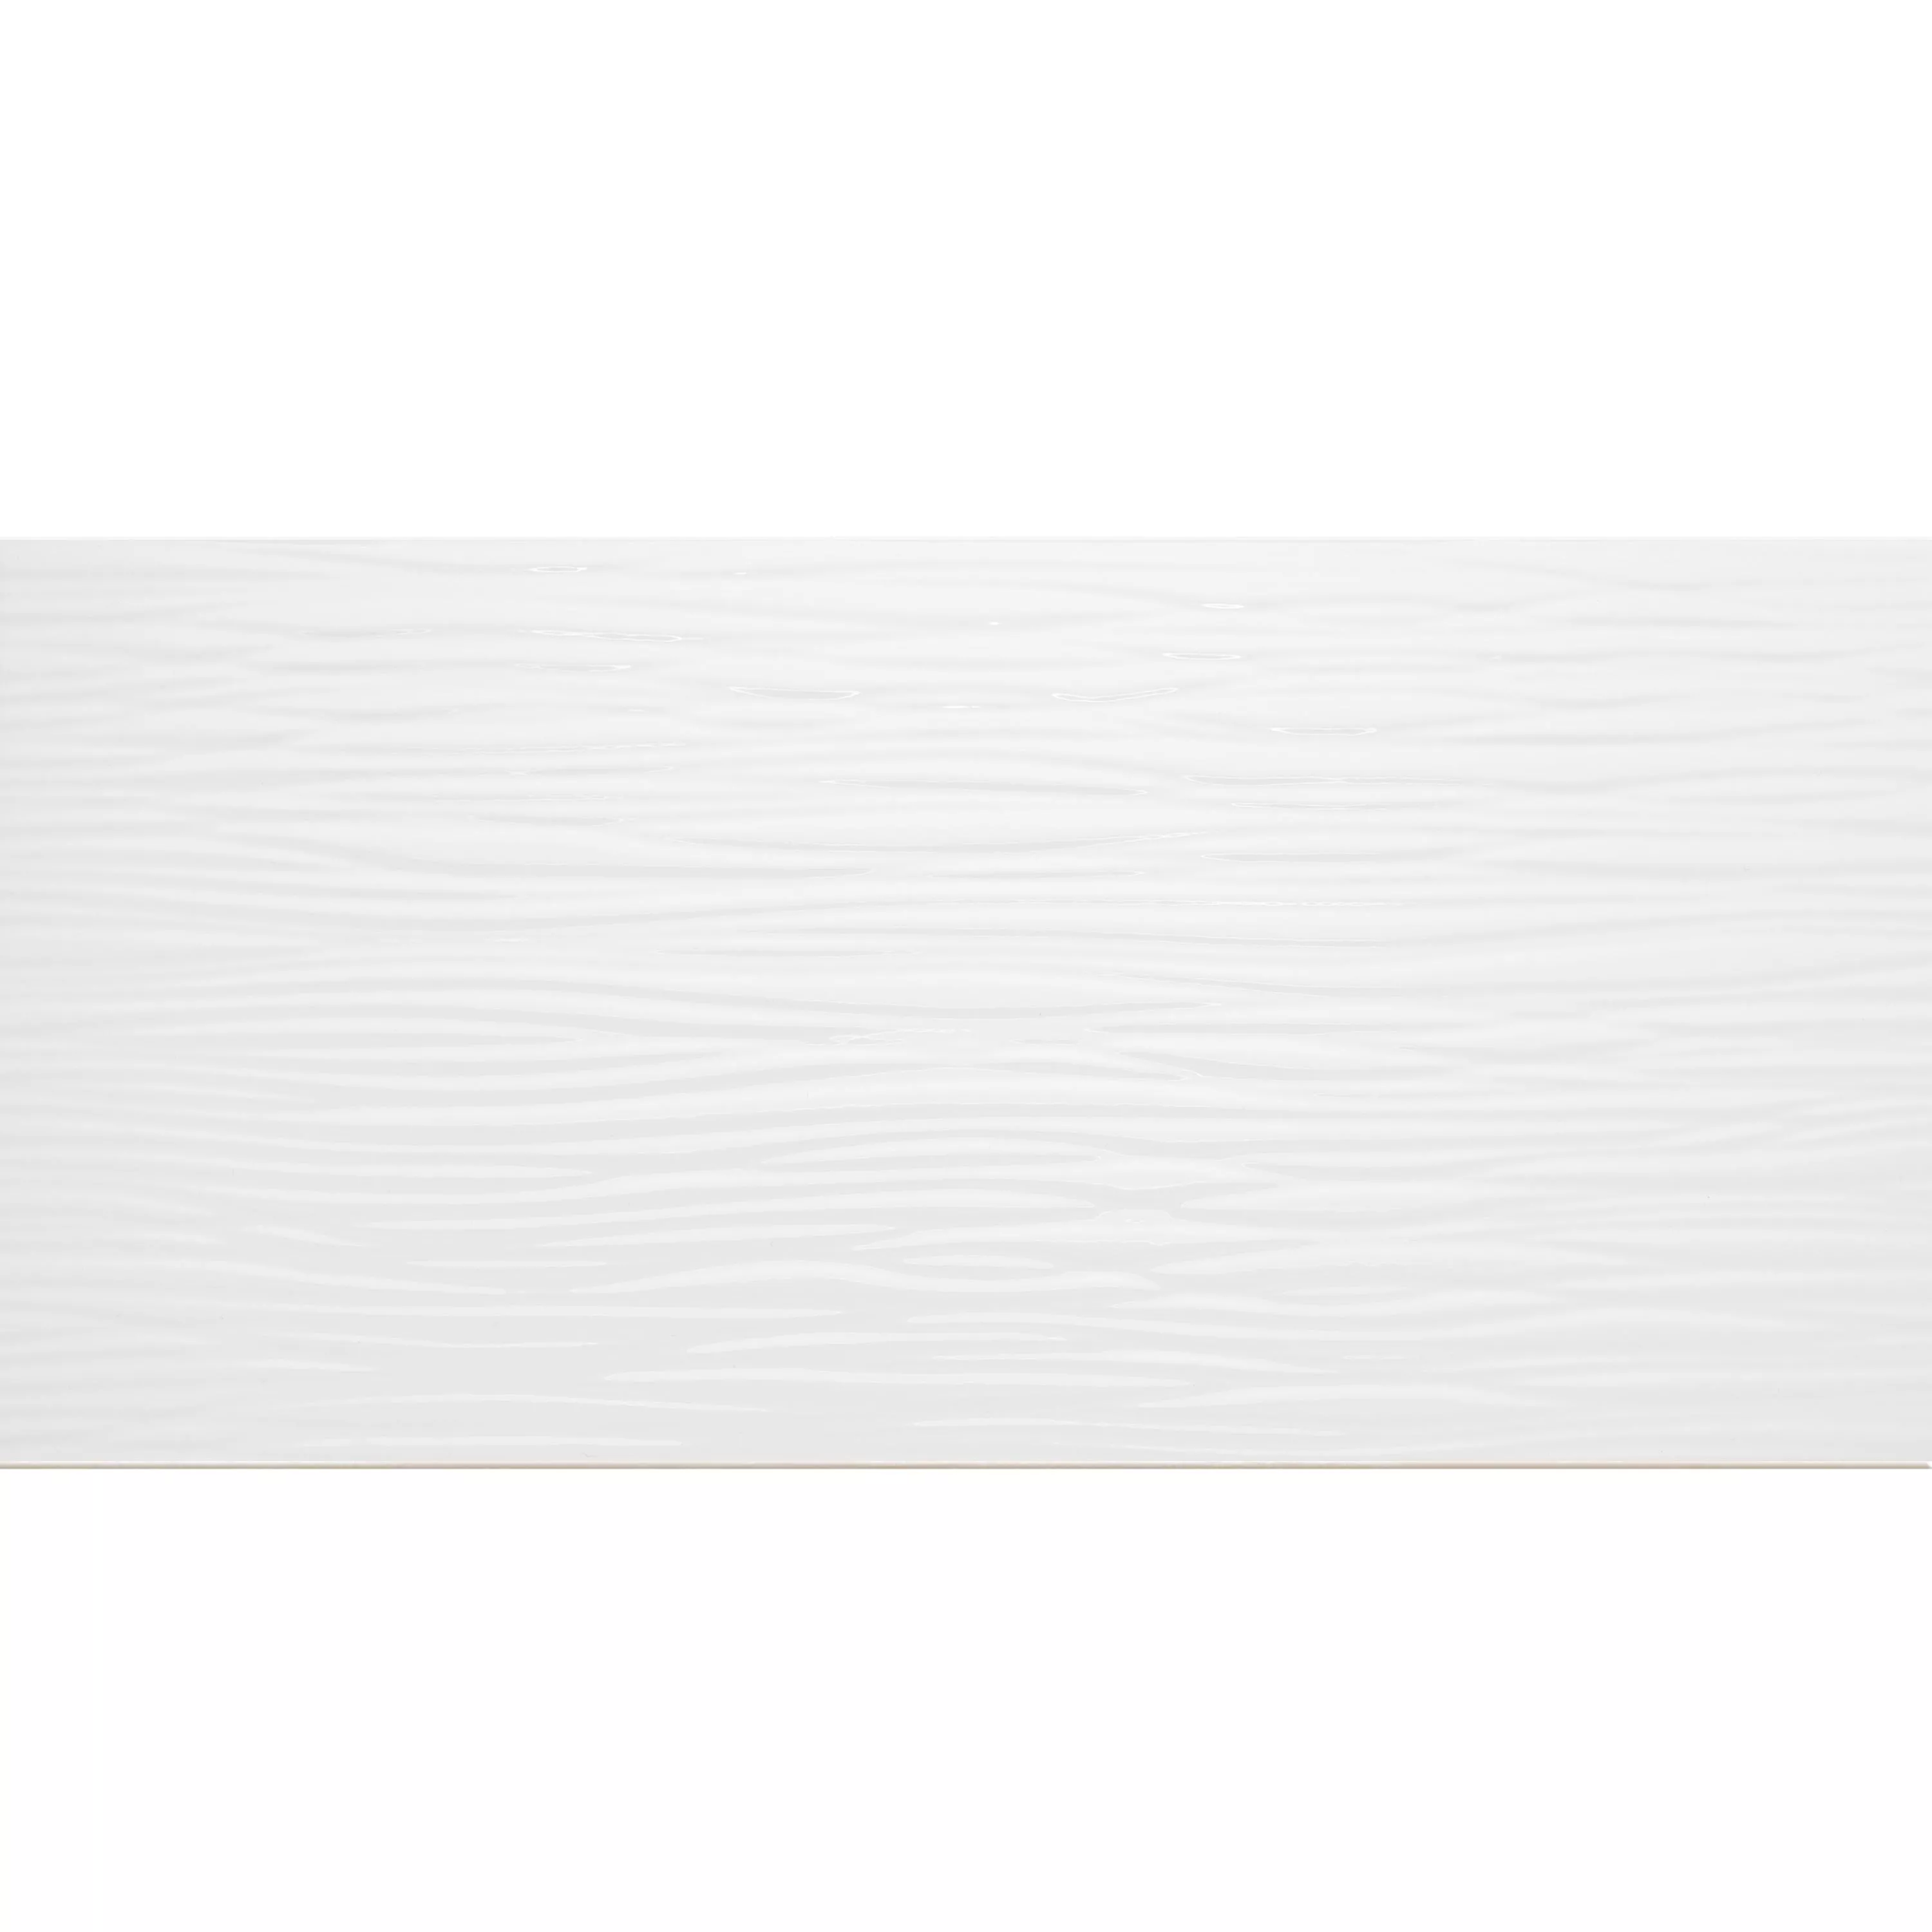 Próbka Płytki Ścienne Norway Strukturalny Błyszczący 25x50cm Biały